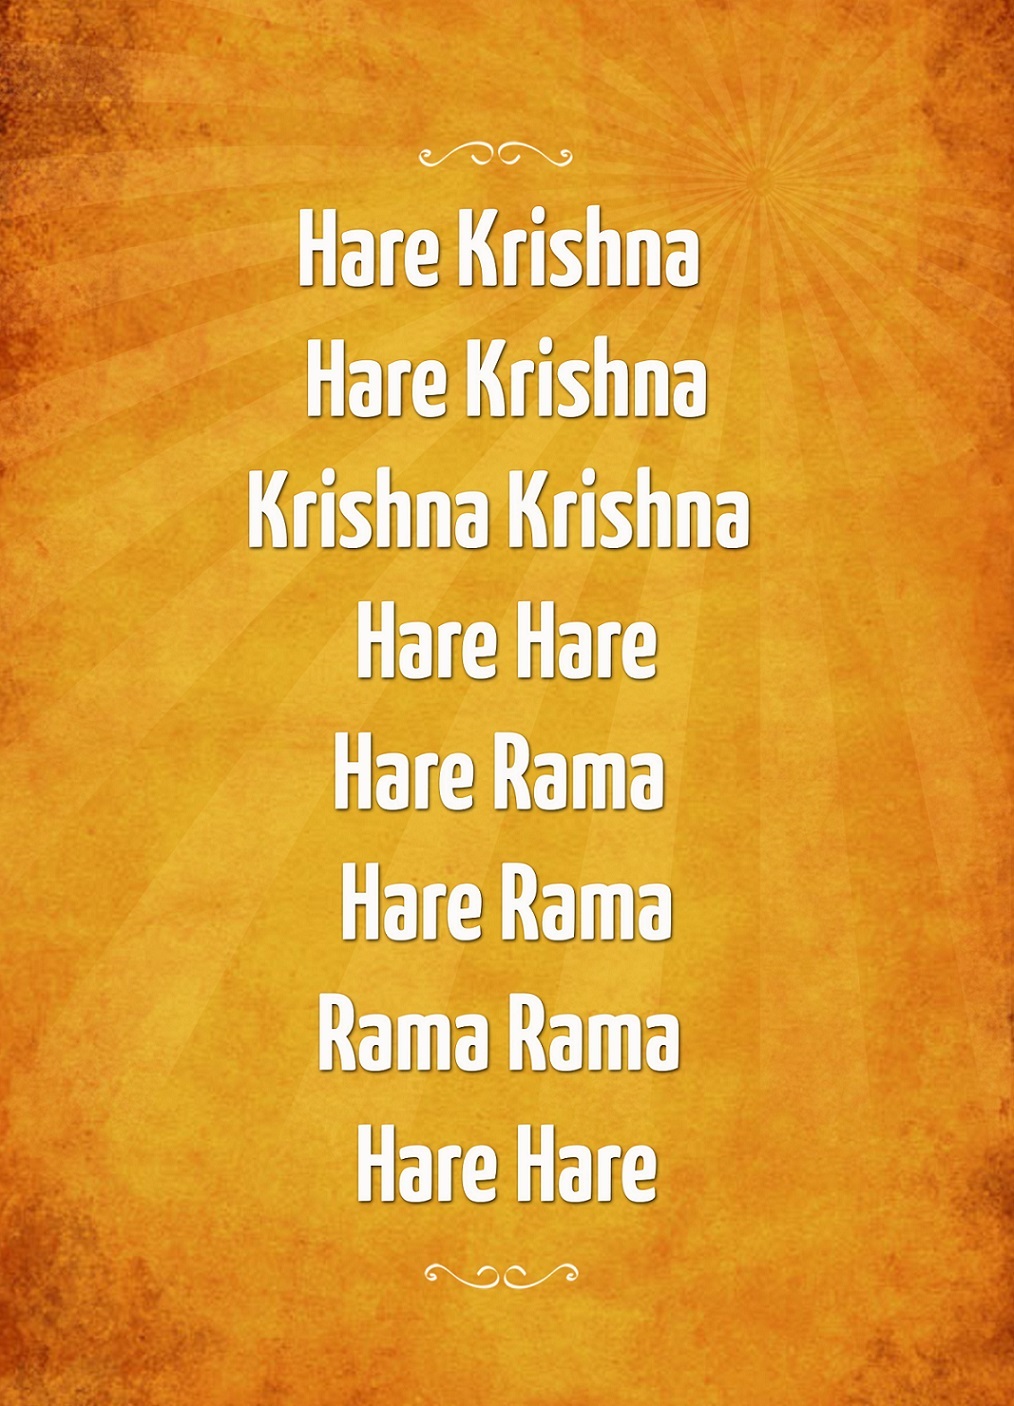 10 Reasons to Chant Hare Krishna